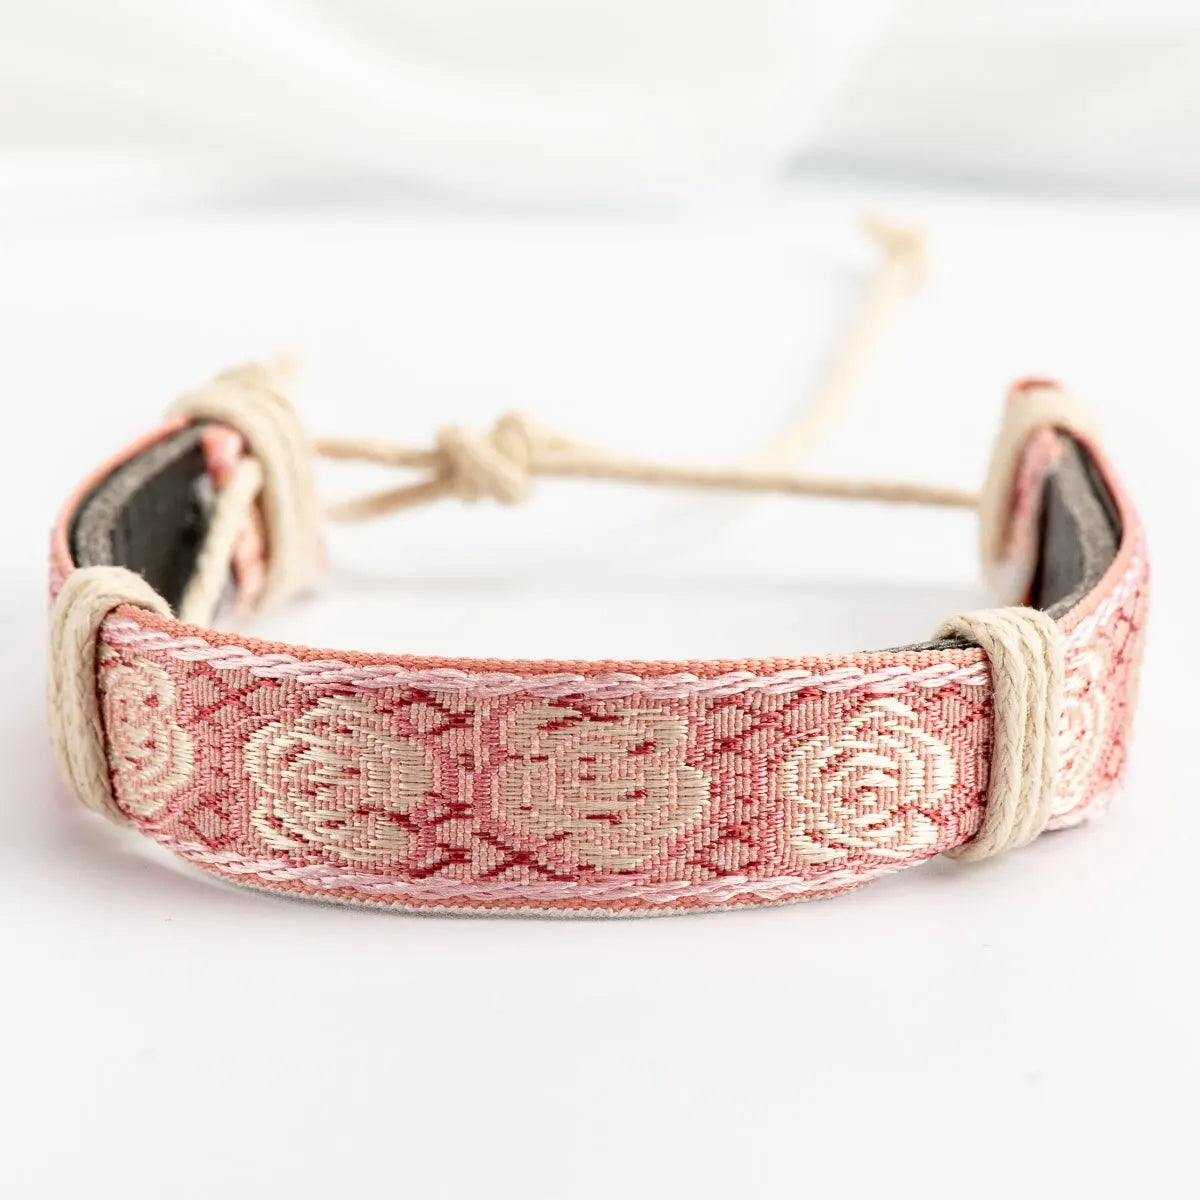 String Adjustable Handmade Macrame Rope Woven Bracelet thread Woven Bracelets